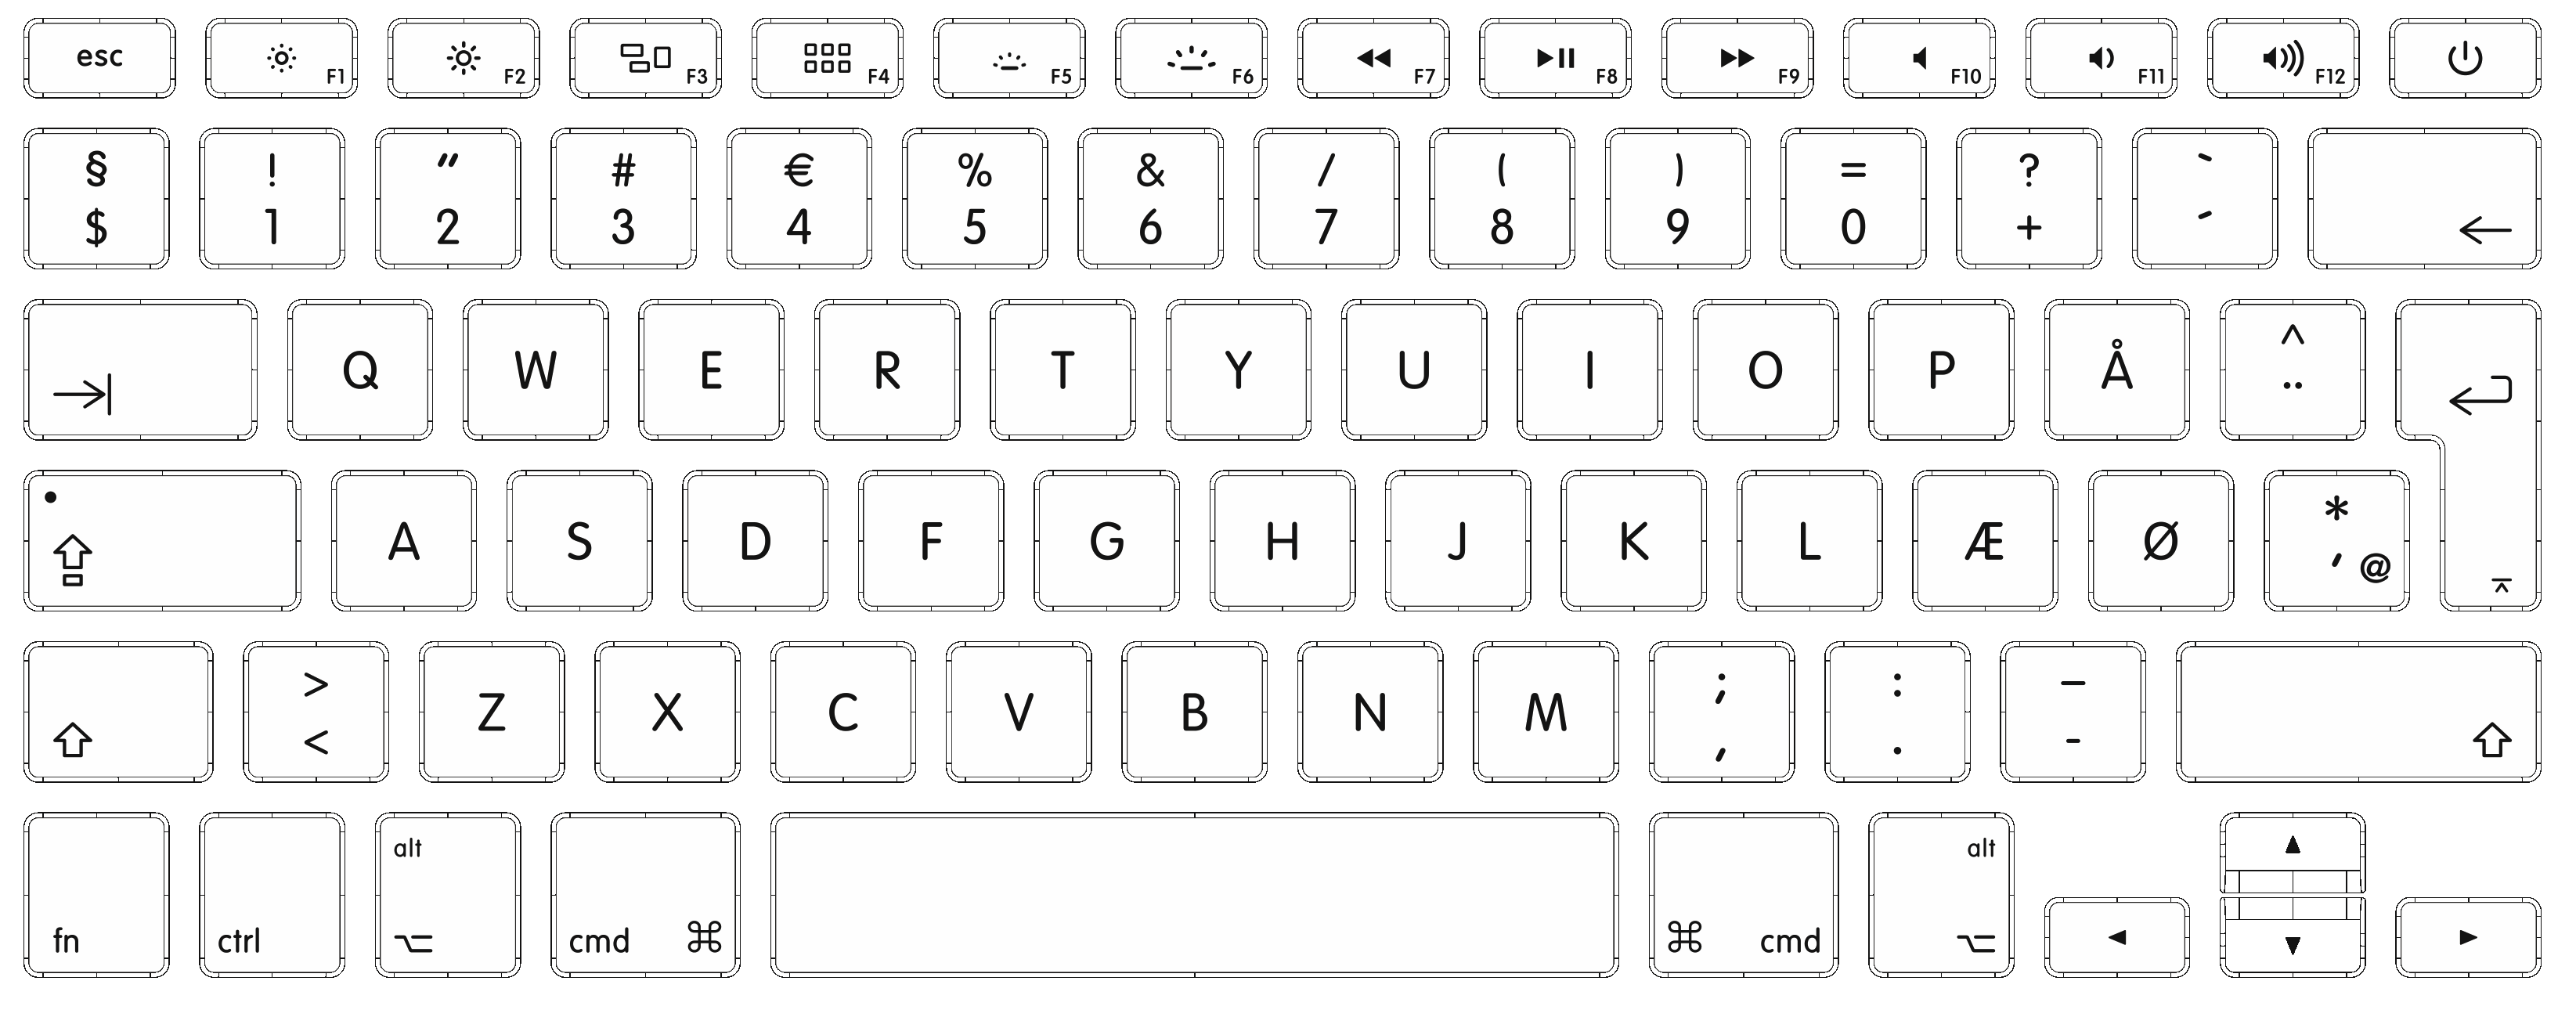 Apple danish keyboard layout shortcut